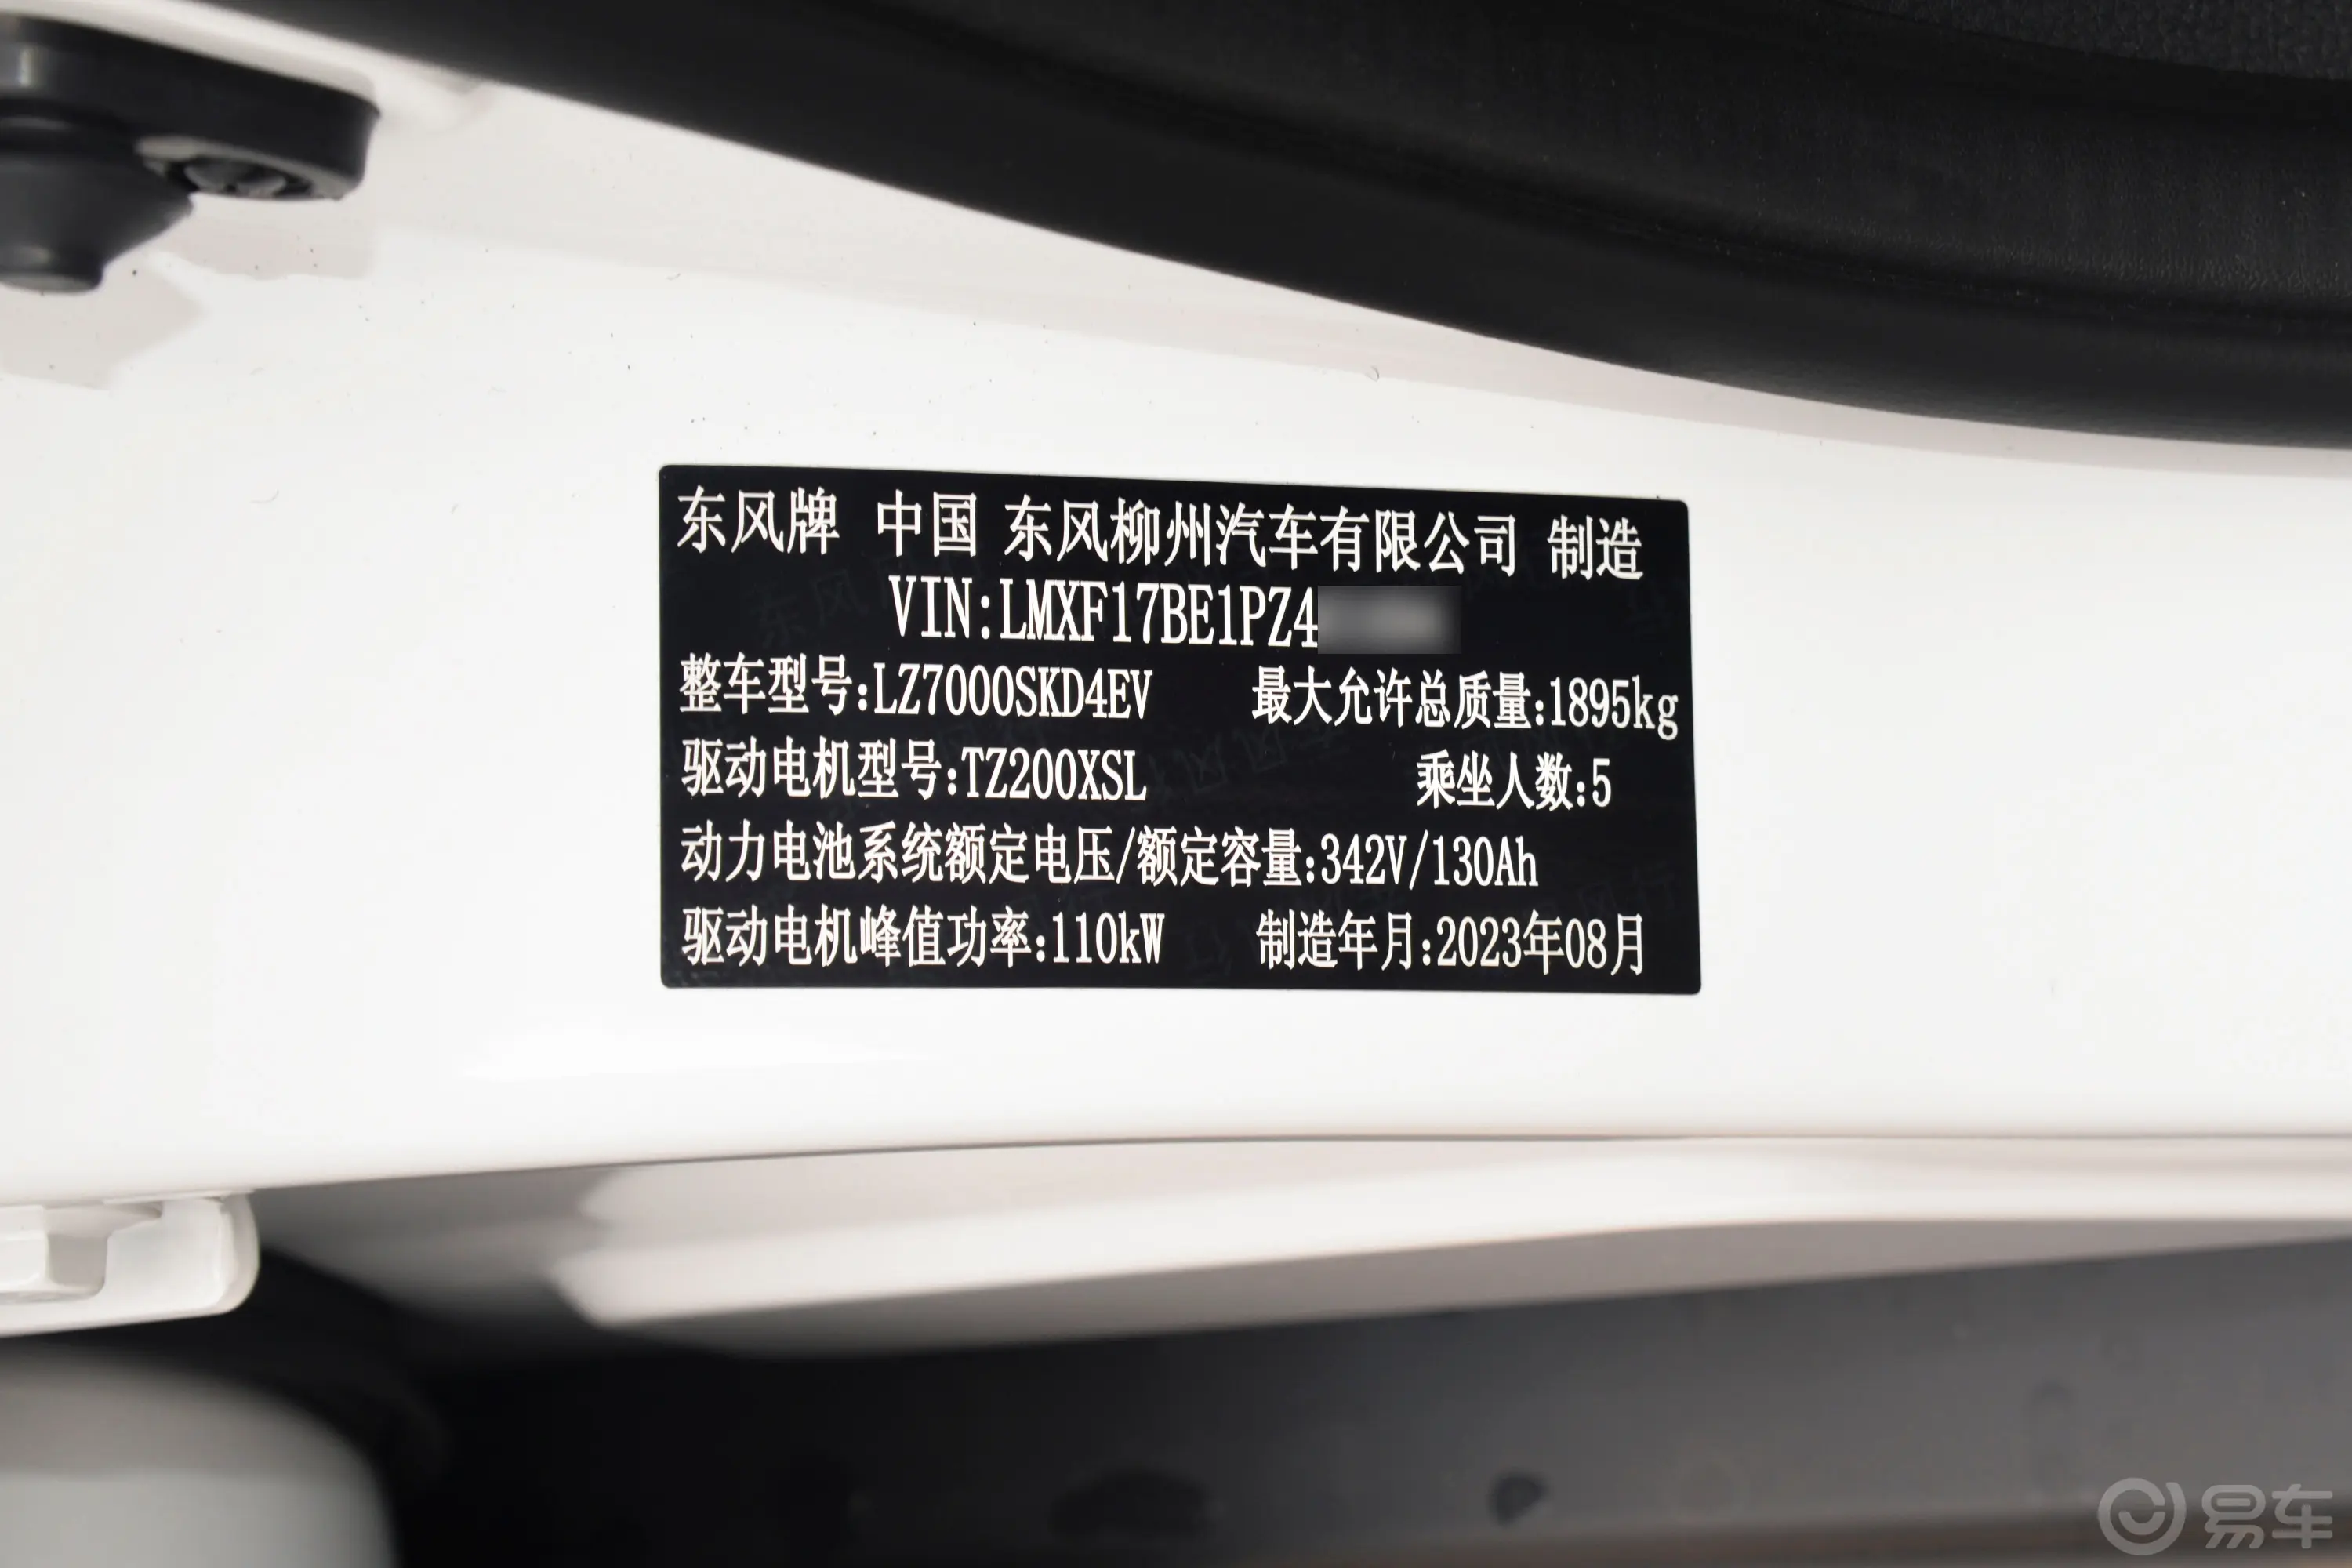 风行S50 EV410km 运营版车辆信息铭牌